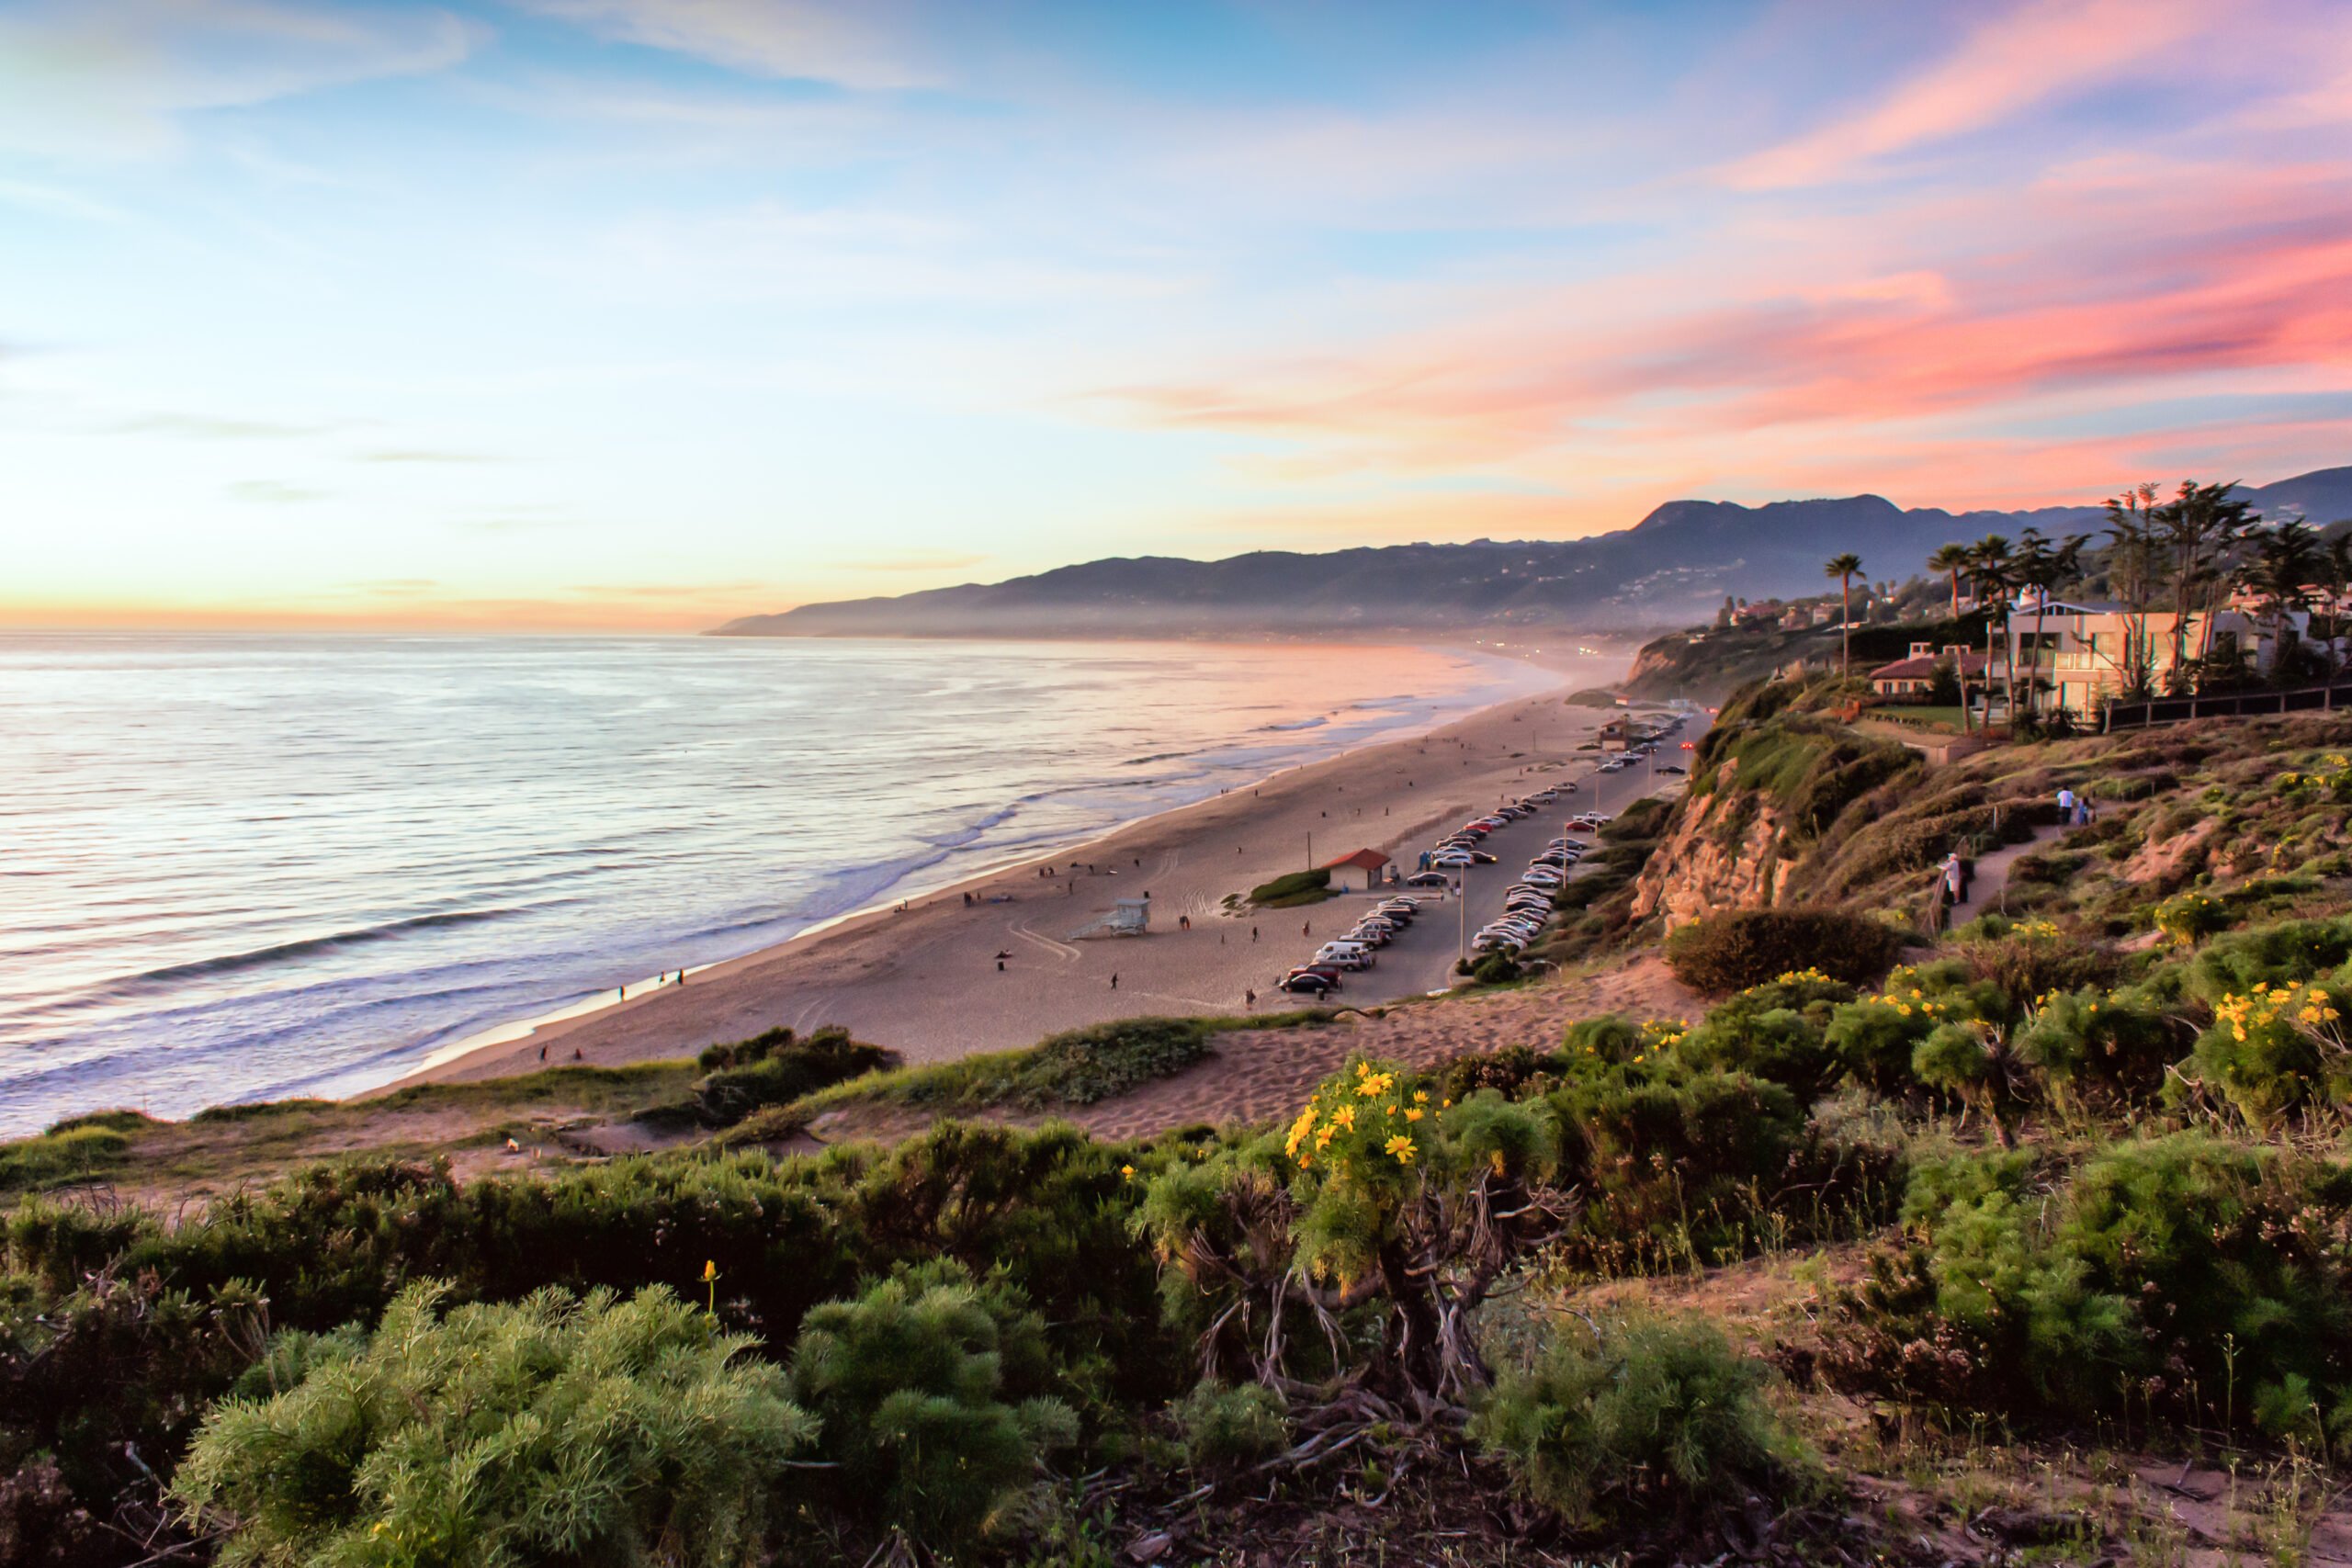 Sunset Over Santa Monica Bay